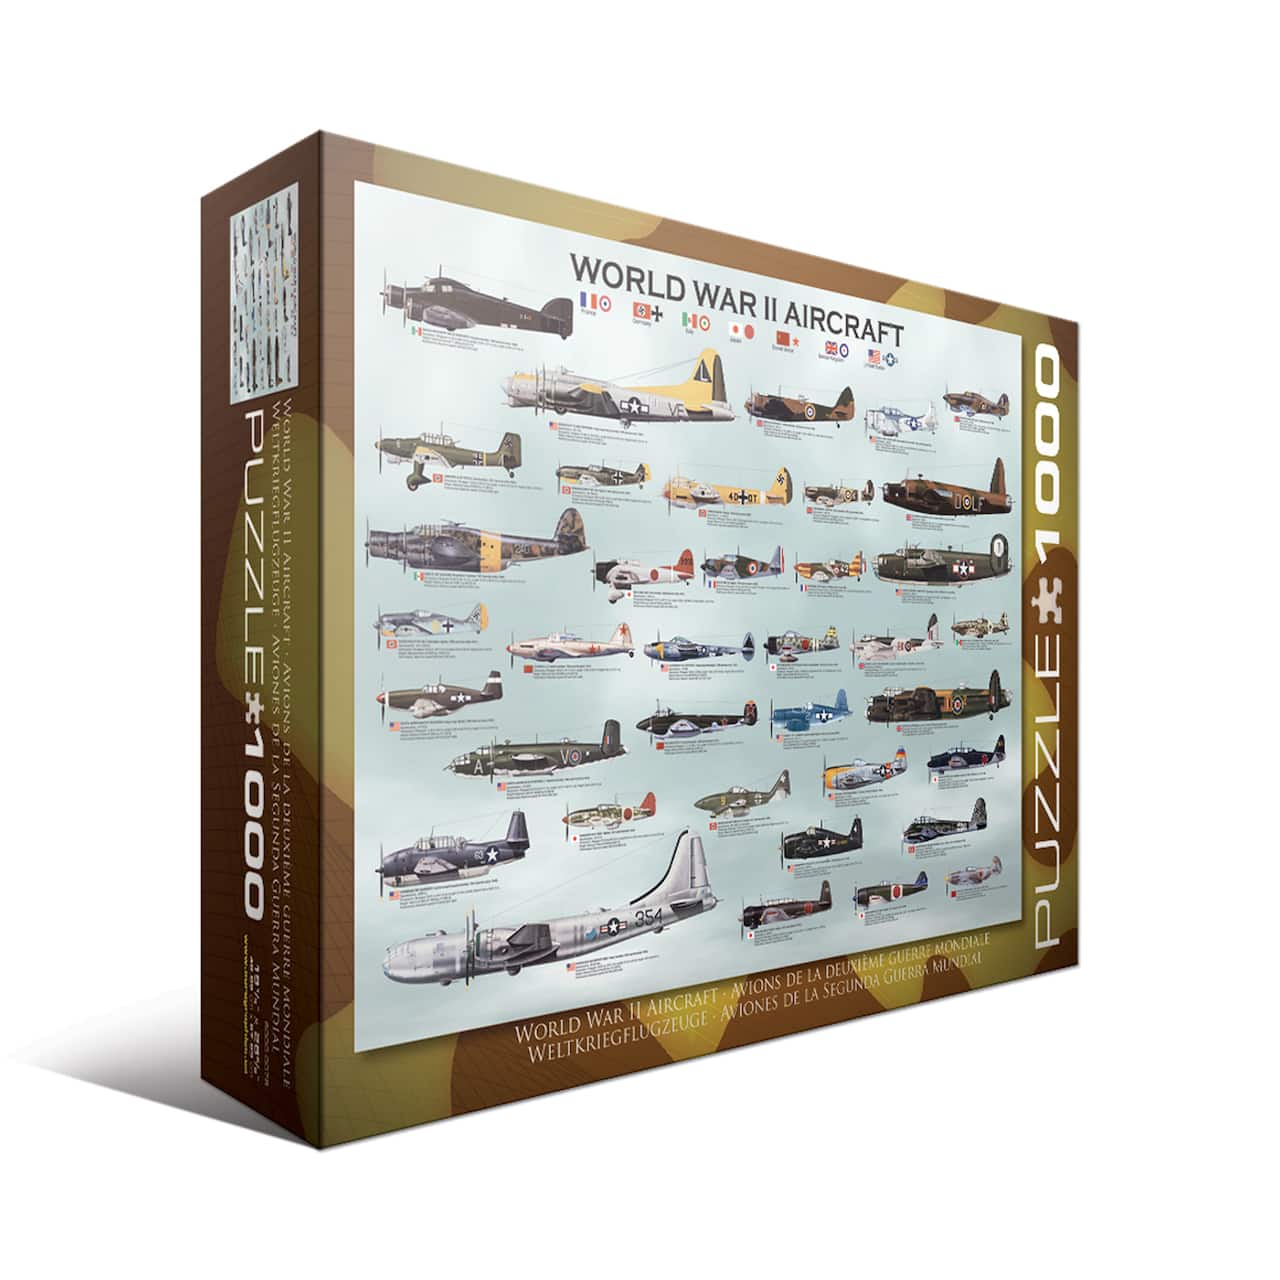 World War II Aircraft 1,000 Piece Jigsaw Puzzle